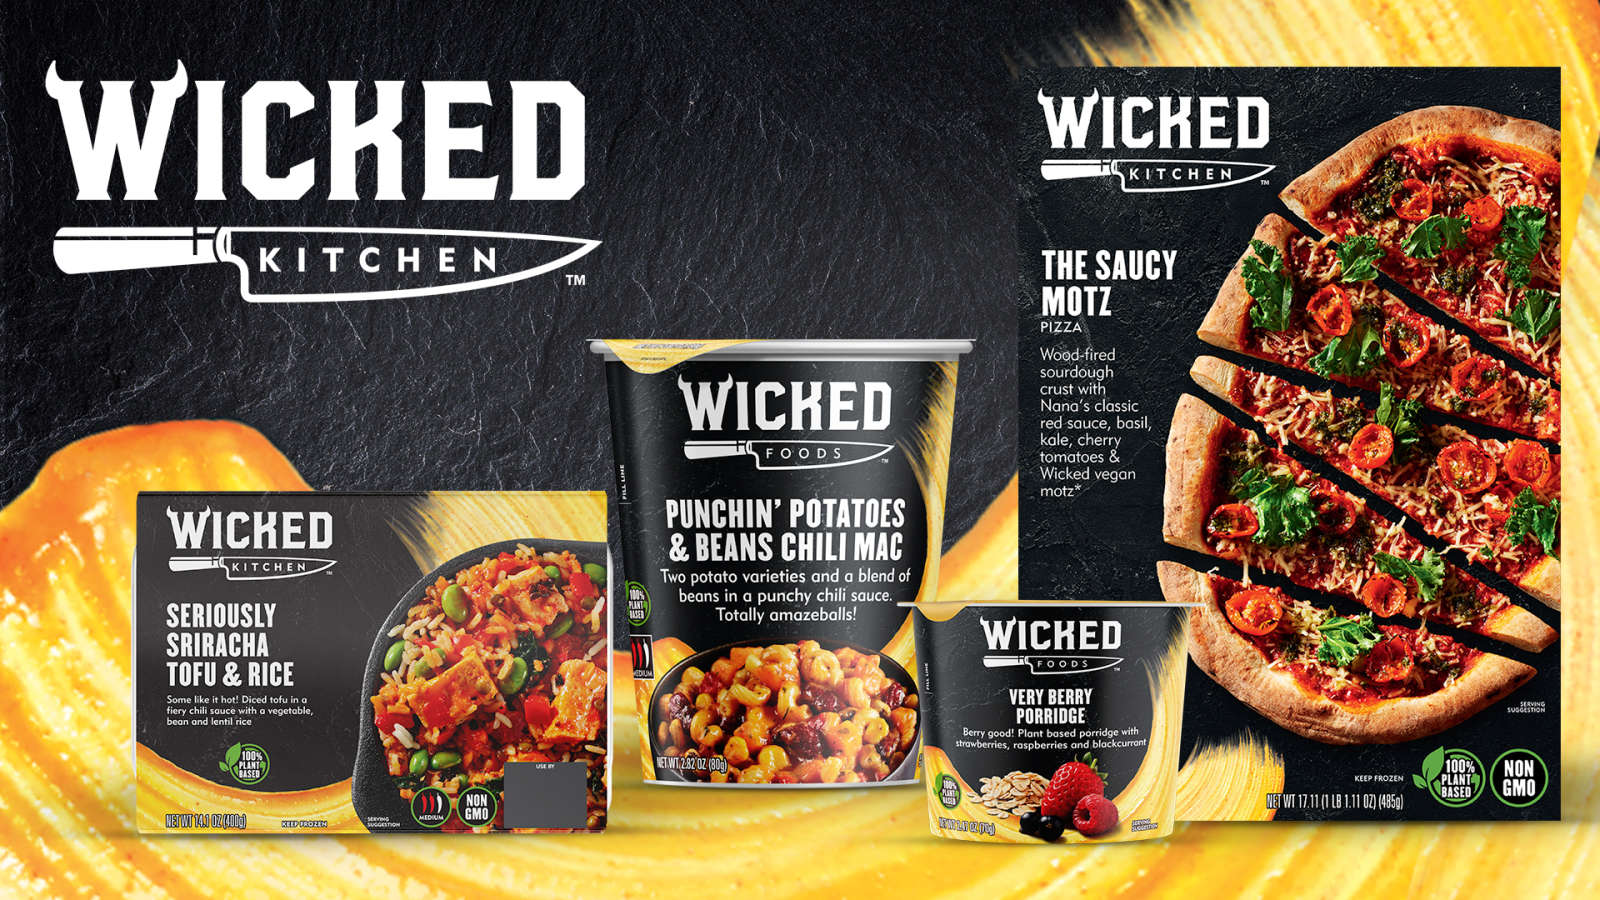 Wicked Kitcheniltä löytyy monta lihaisalta maistuvaa vaihtoehtoa aina pizzoista valmiisiin aterioihin.